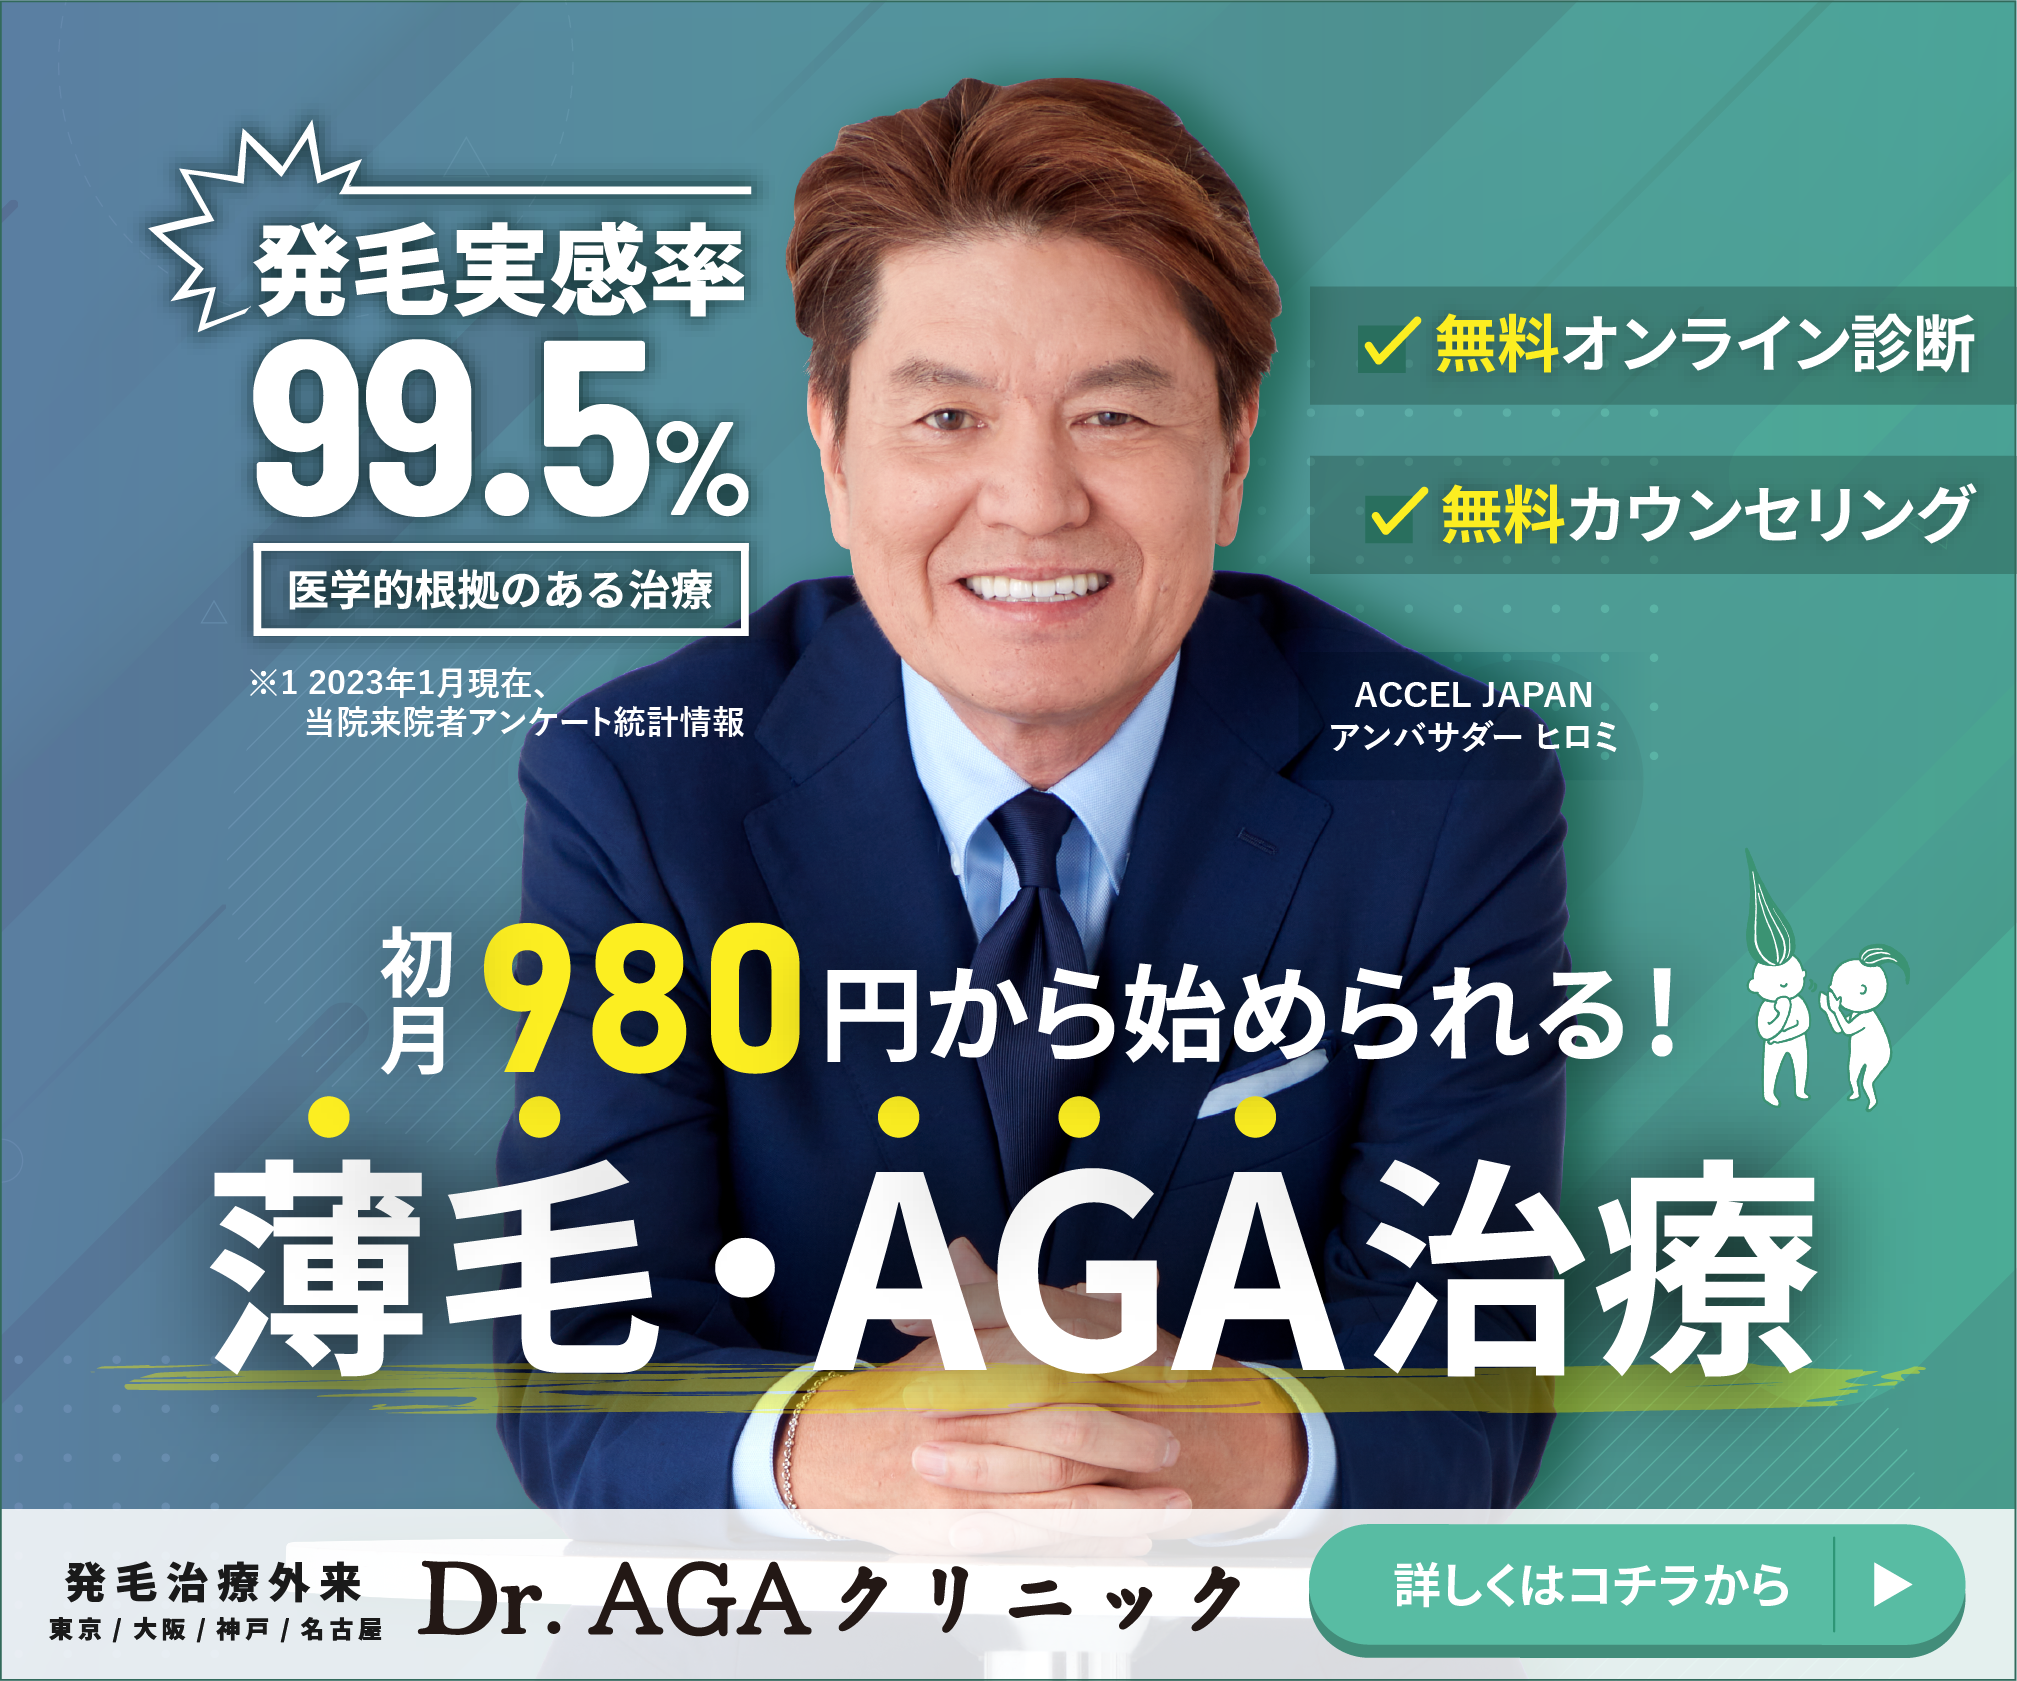 AGA・薄毛治療「Dr.AGAクリニック」は ACCEL JAPAN アンバサダーヒロミ